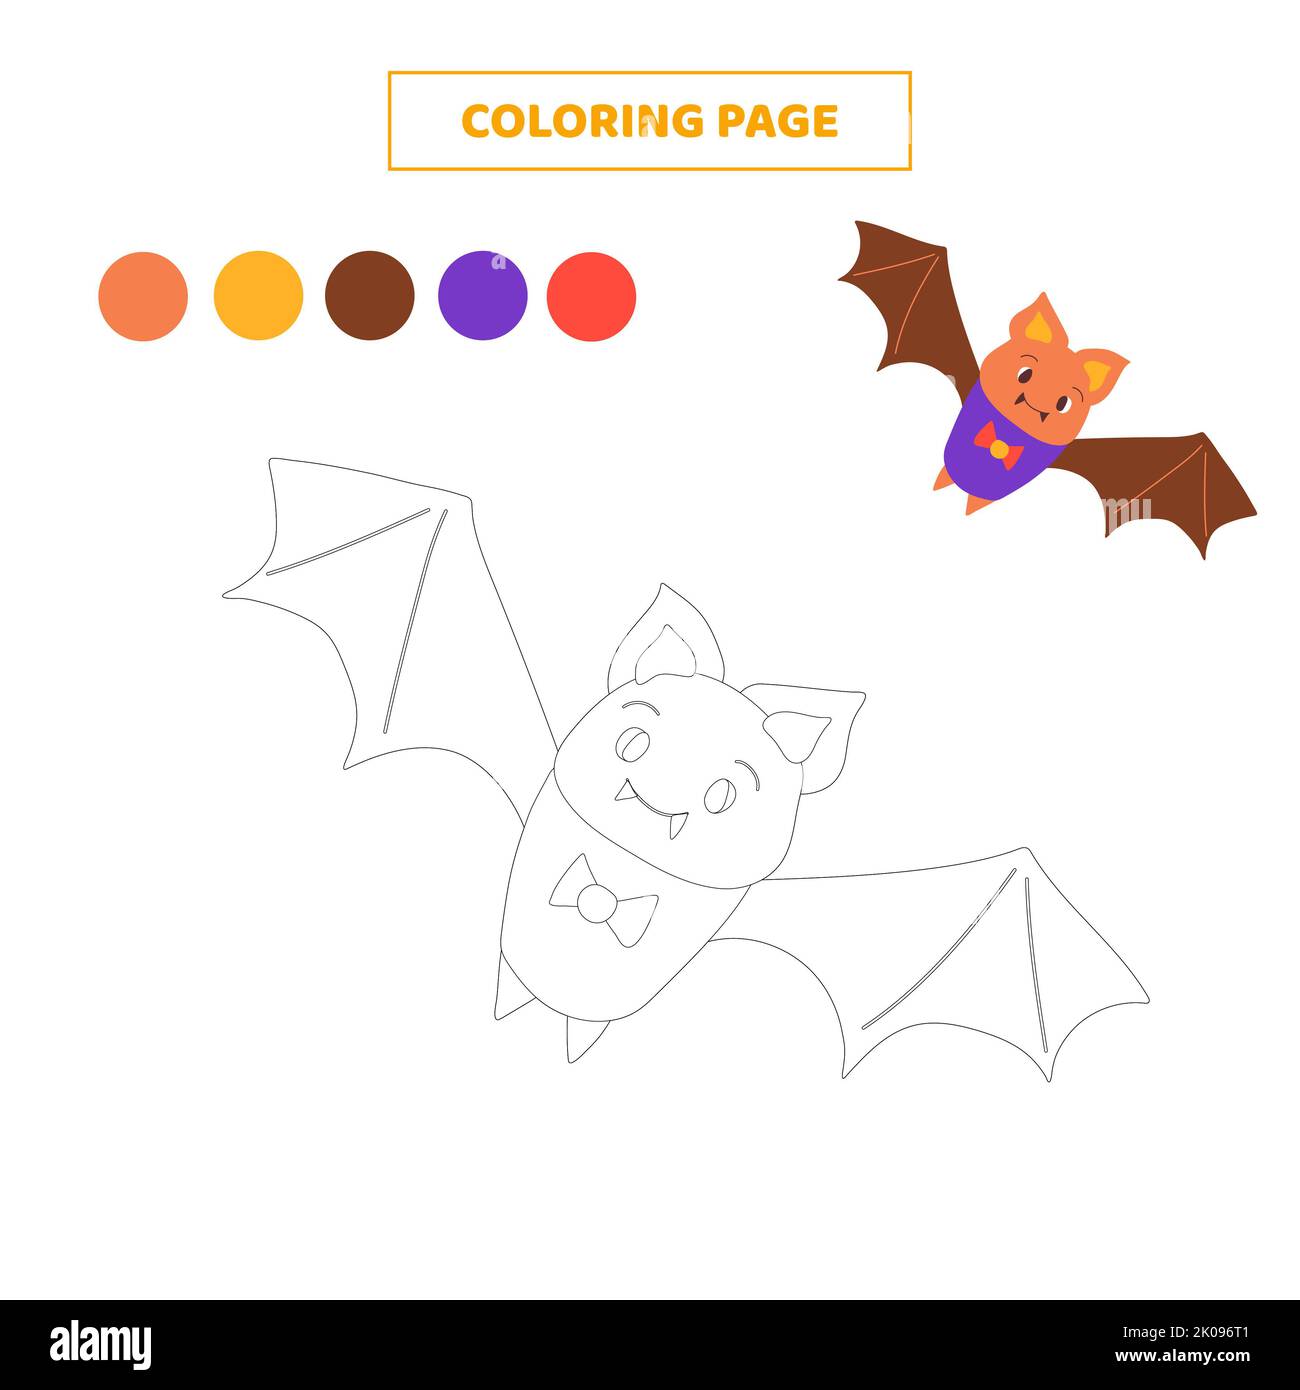 50 páginas Libro imprimible Kawaii Páginas para colorear para